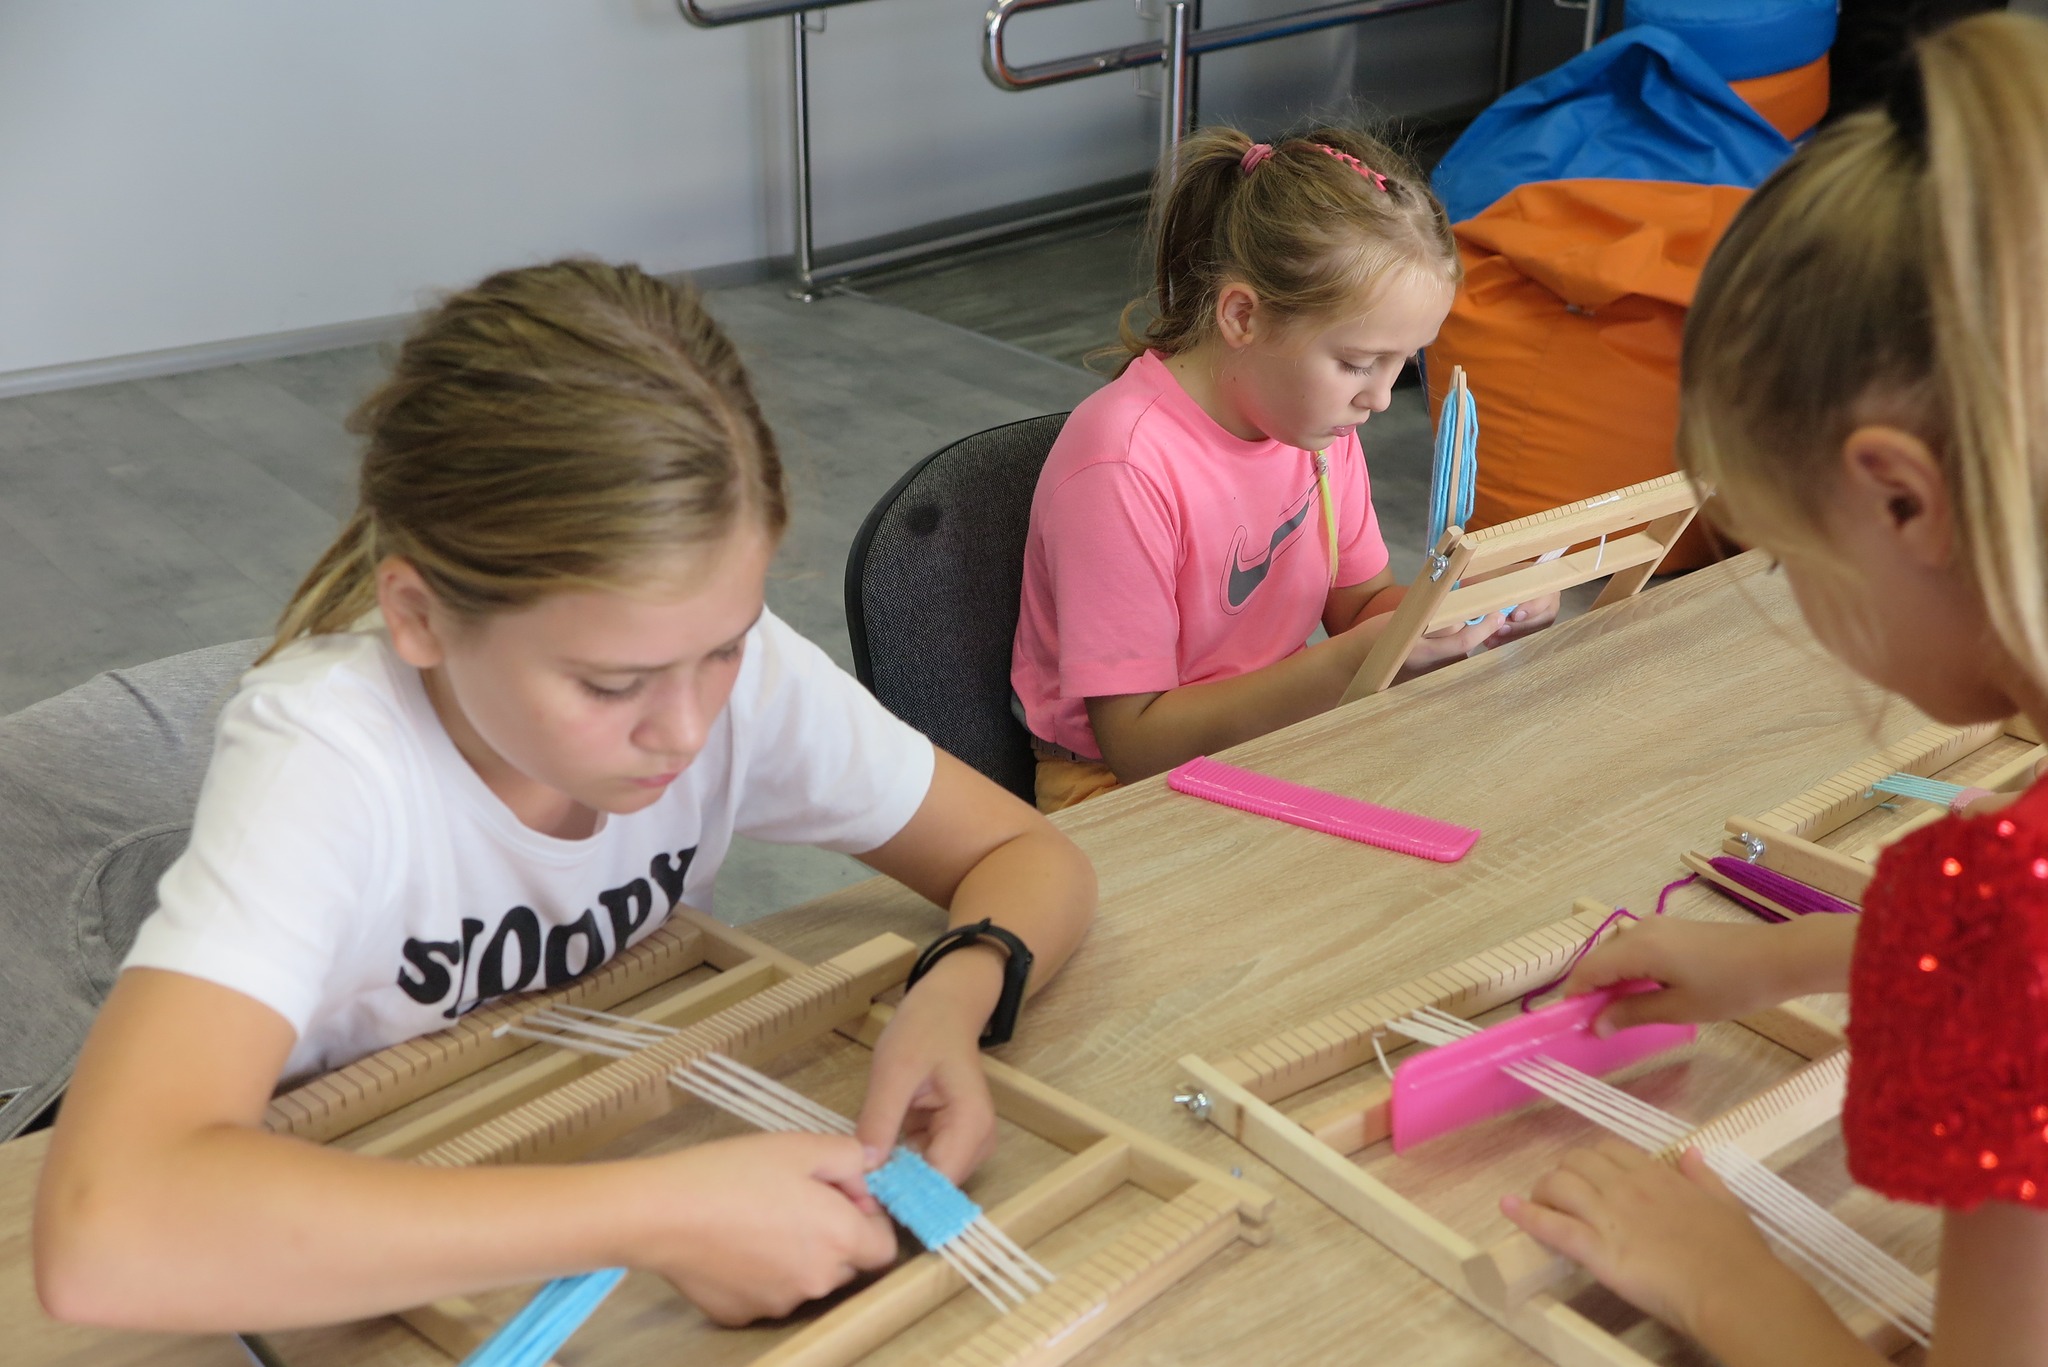 uczestnicy warsztatów tkackich podczas zajęć uczą się tkać na krosnach zakładki do książek